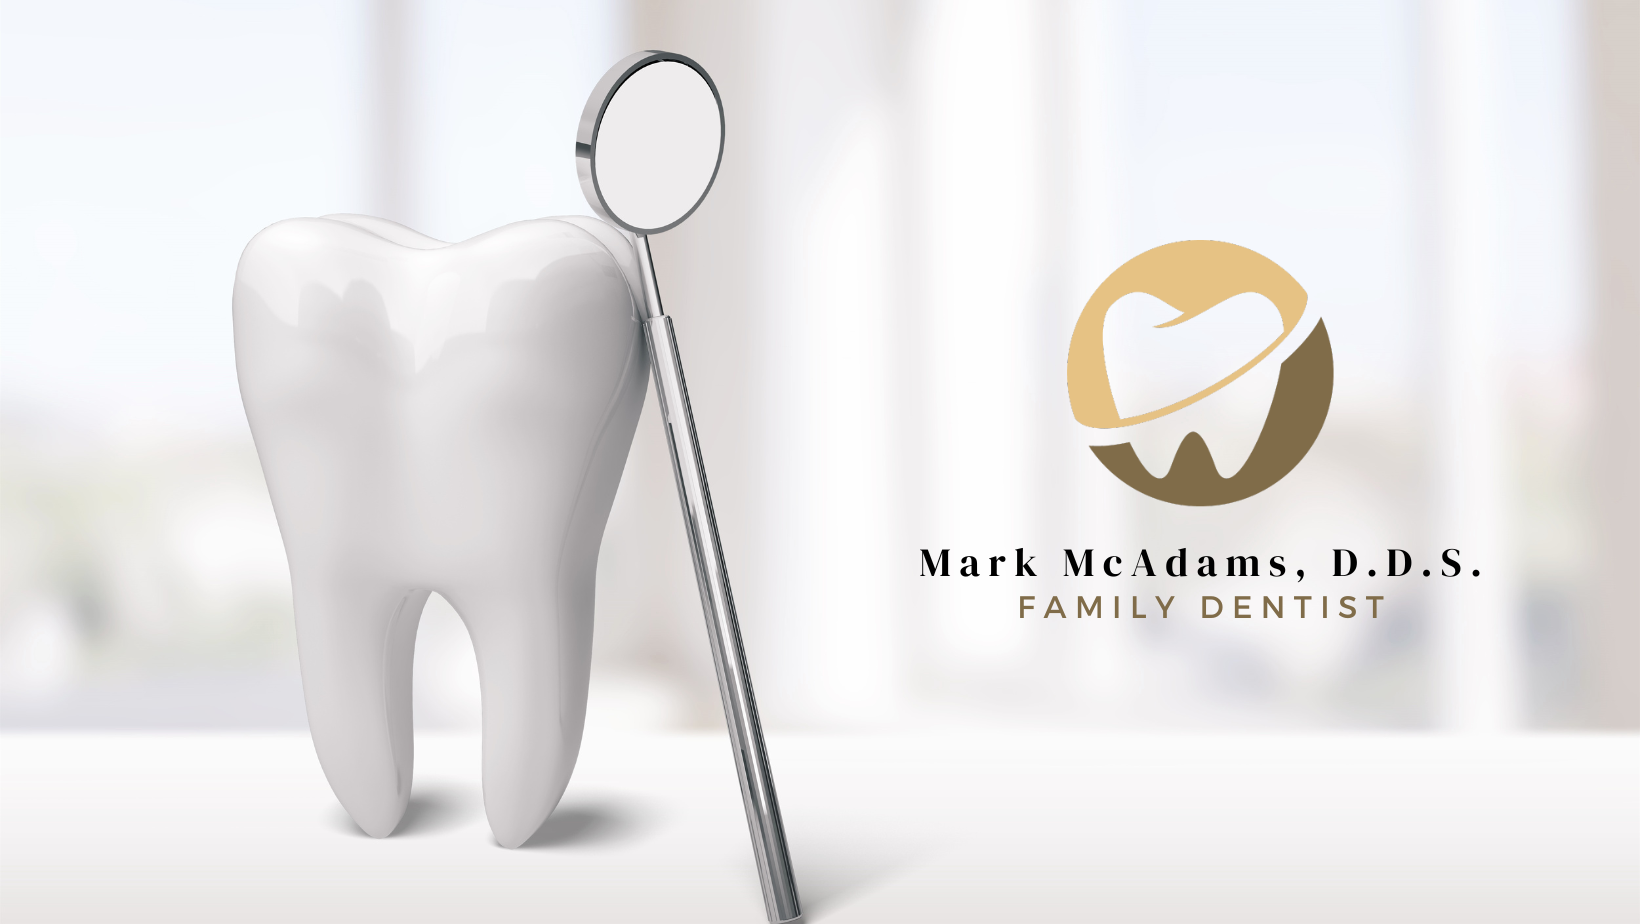 Dr. Mark McAdams D.D.S., Family Dentist